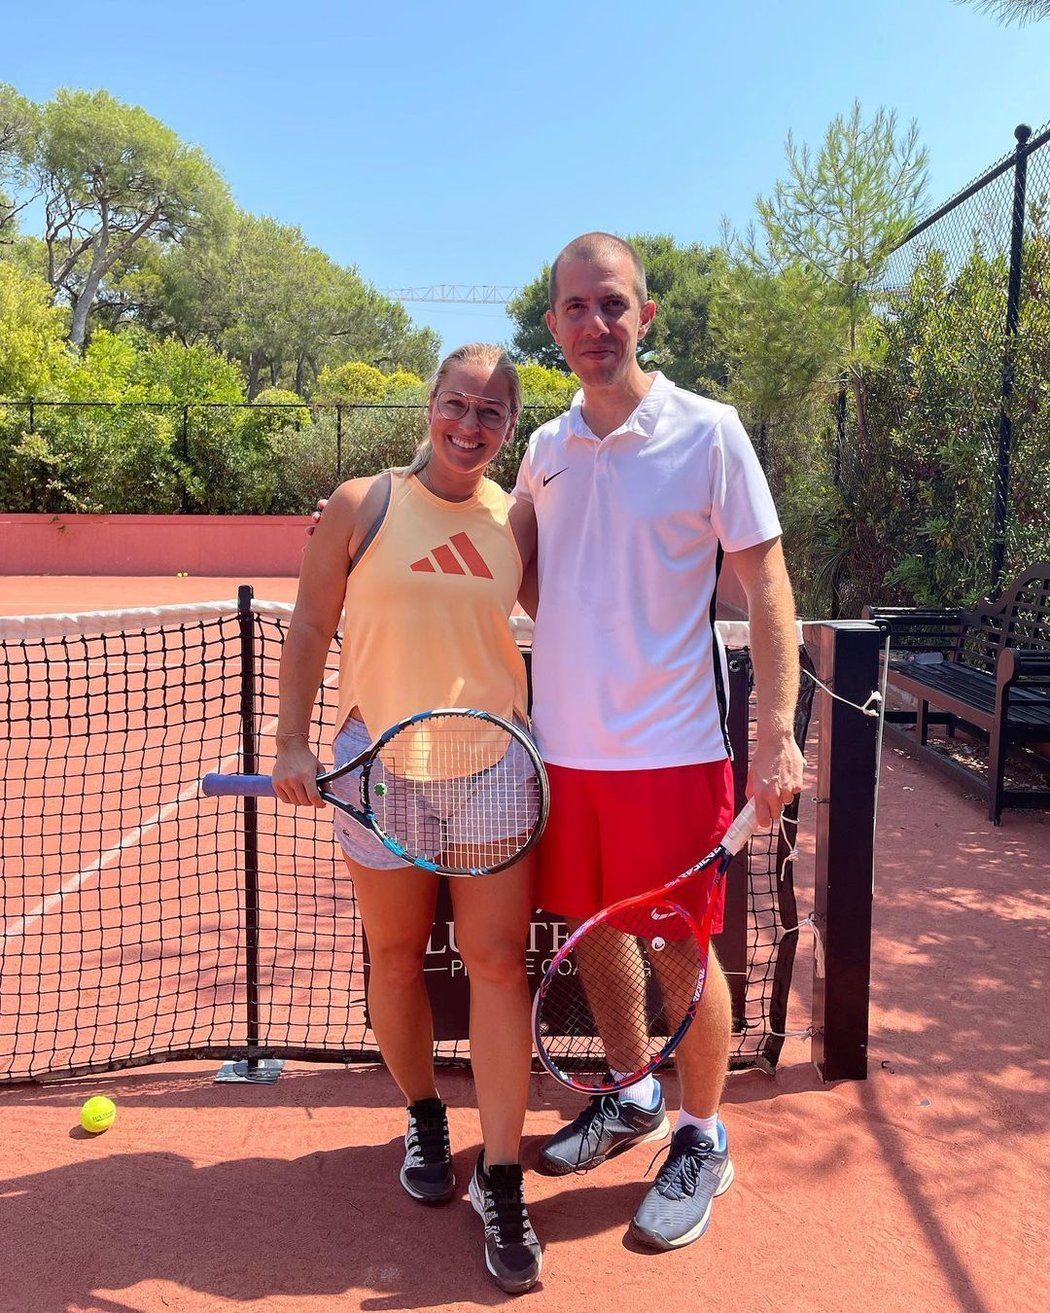 Slovenská ex-tenistka Dominika Cibulková už zná pohlaví očekávaného potomka